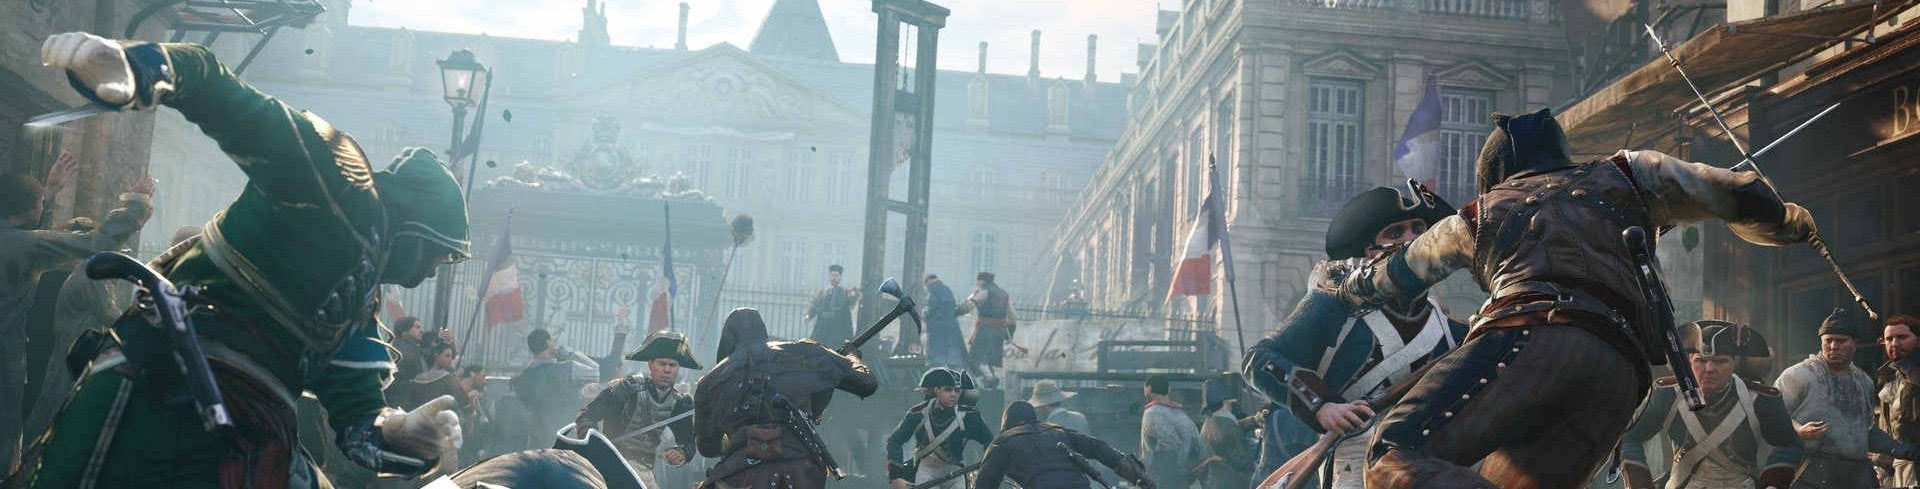 Afbeeldingen van Assassin's Creed Unity toont Tweede Wereldoorlog-setting